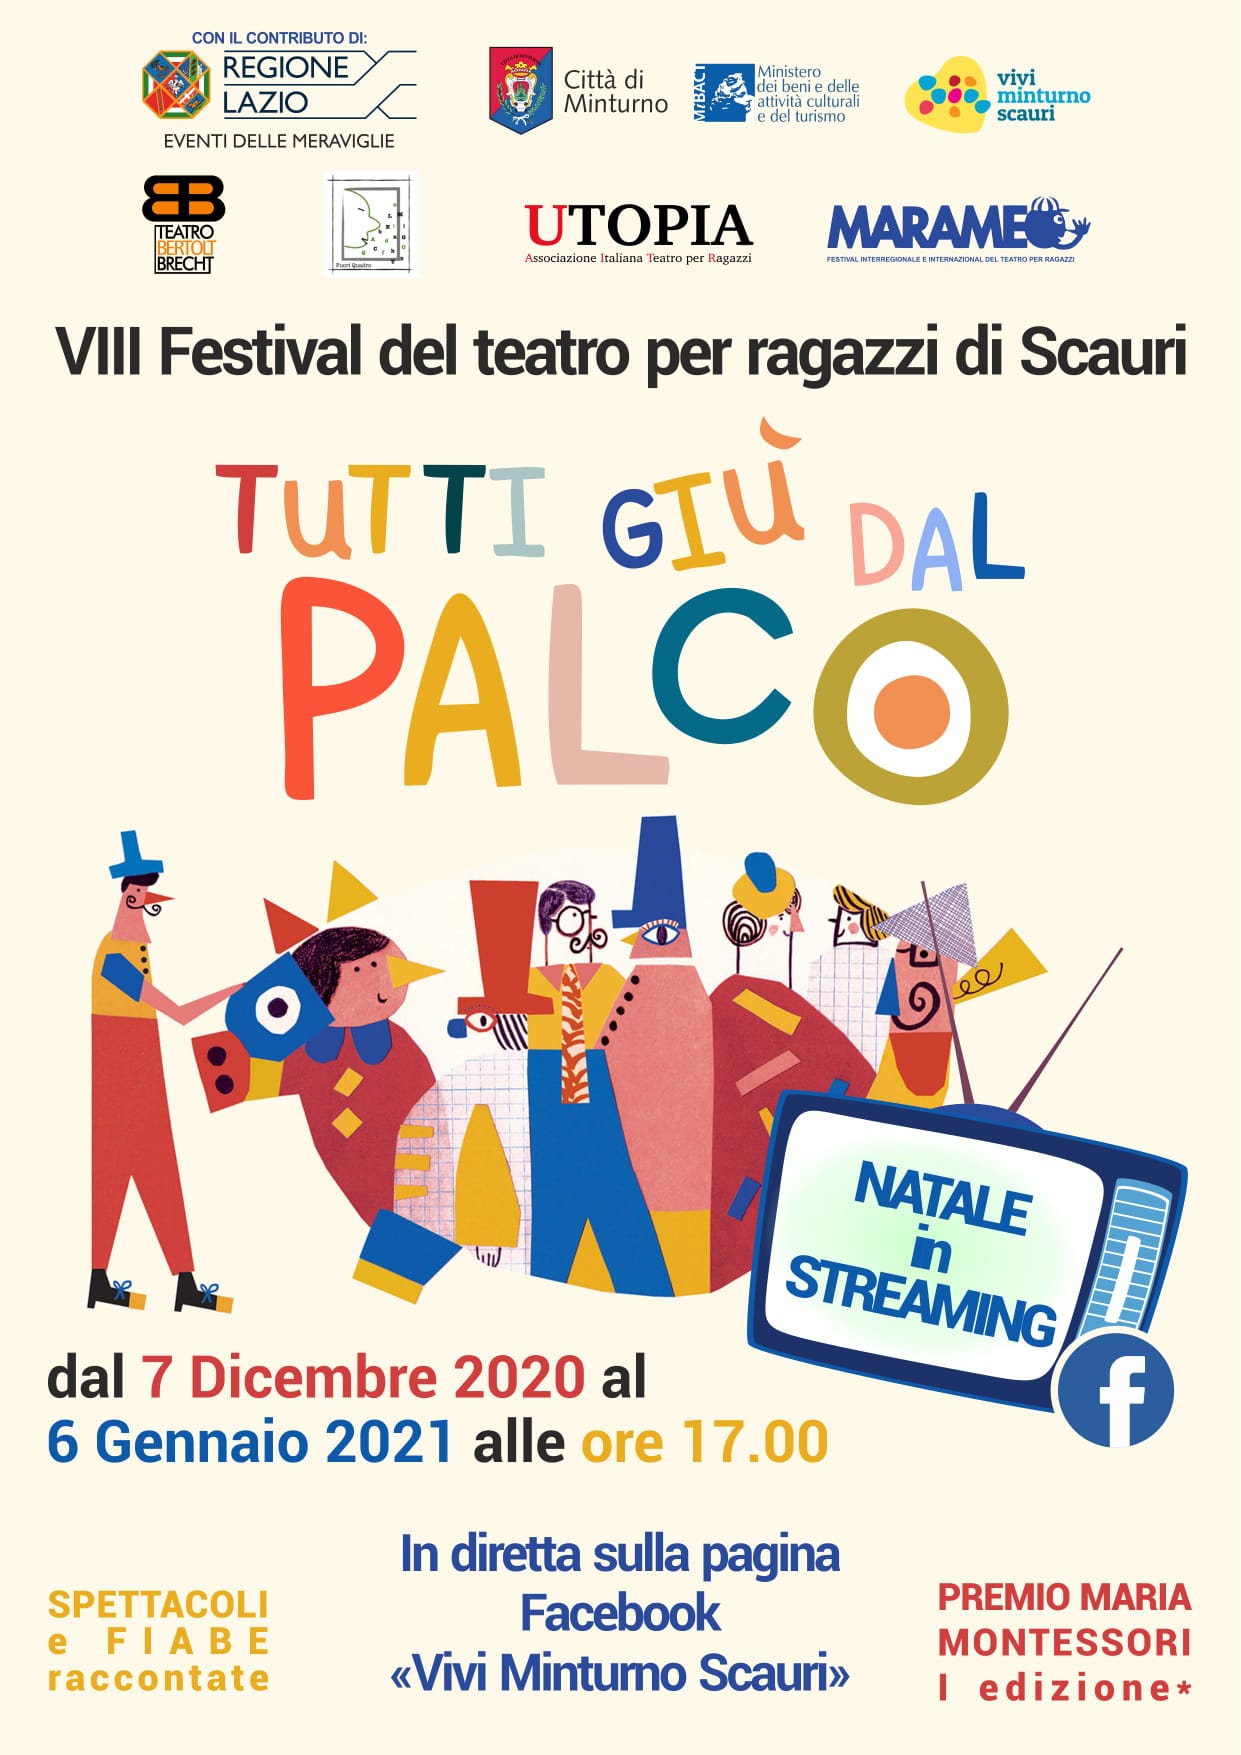 TUTTI GIÙ DAL PALCO - 8° FESTIVAL DI TEATRO PER RAGAZZI DI SCAURI - NATALE 2020 IN STREAMING